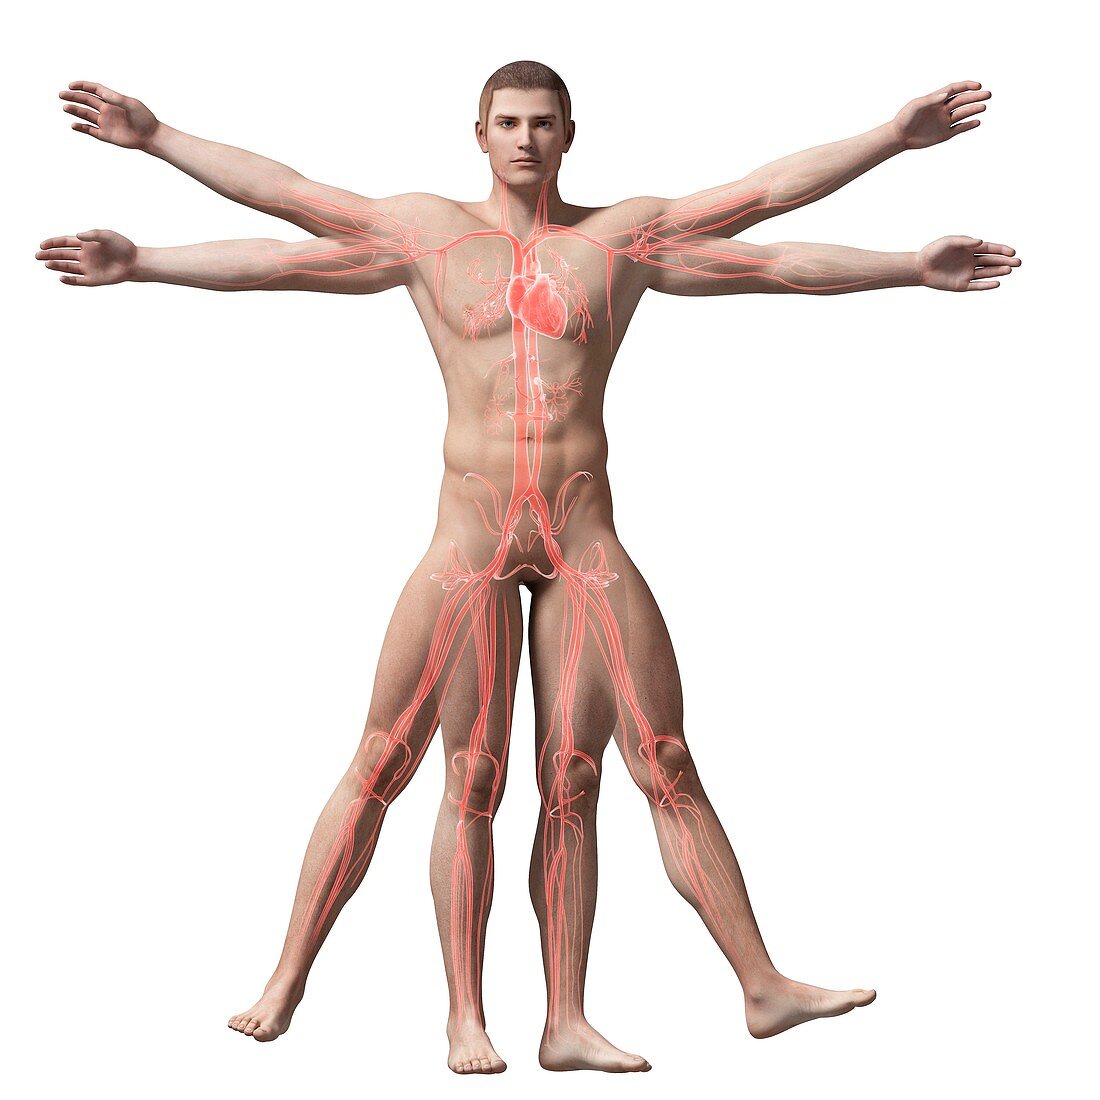 Human vascular system,illustration